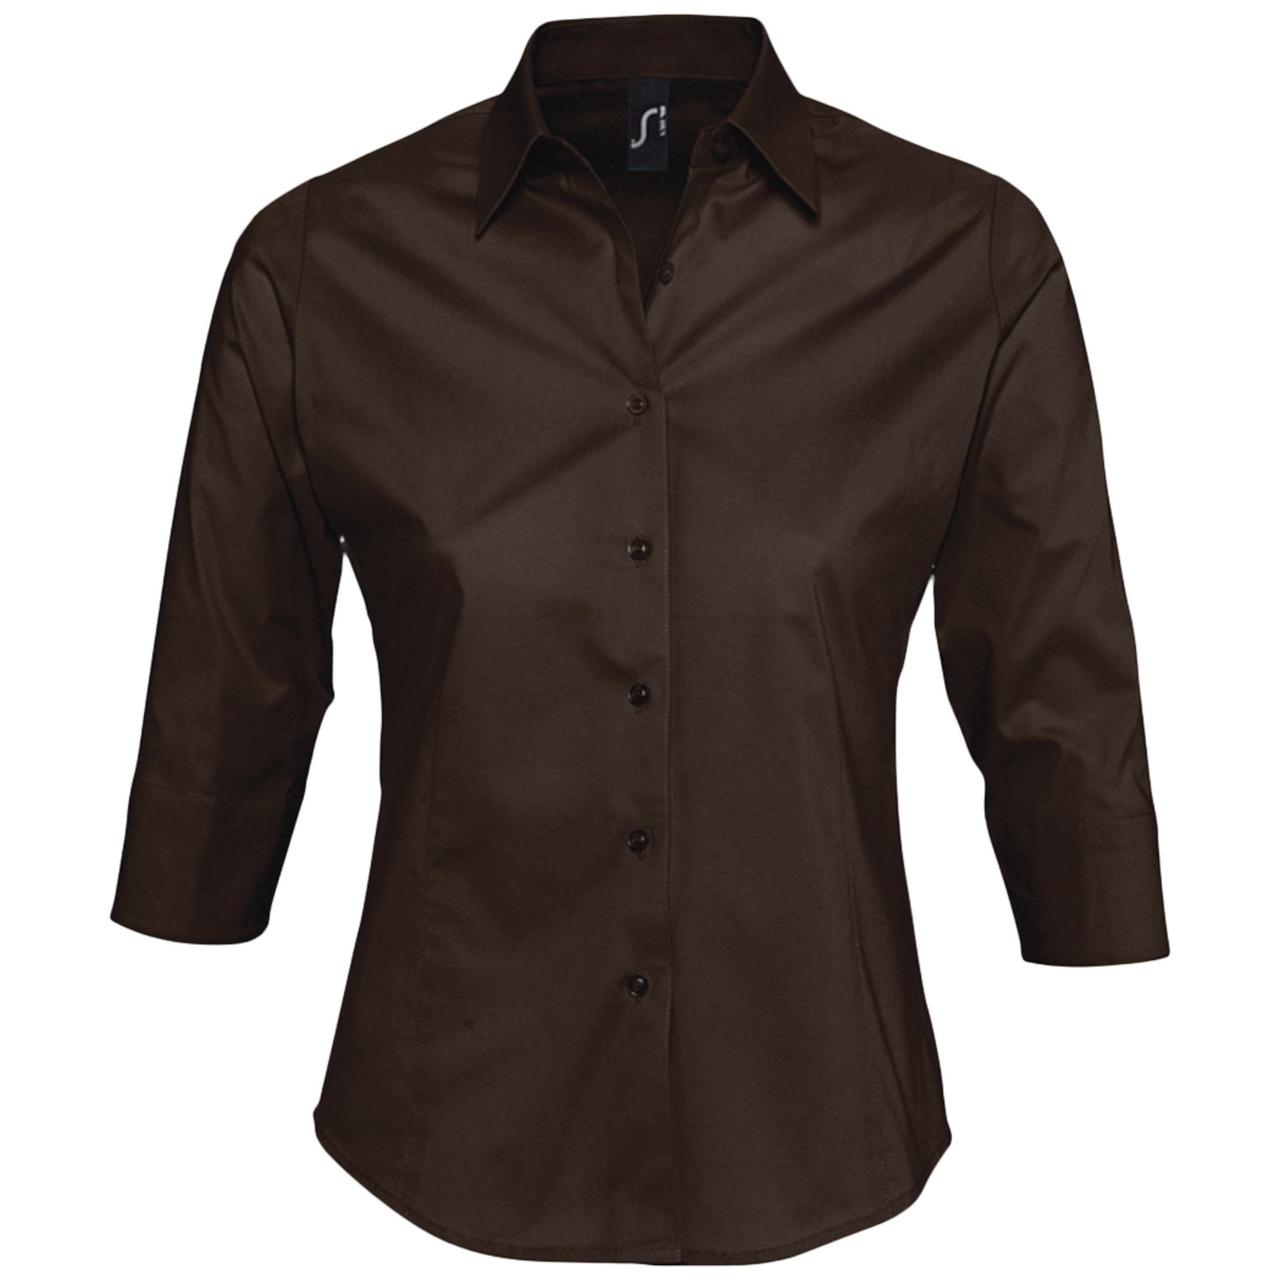 Рубашка женская с рукавом 3/4 Effect 140, темно-коричневая (артикул 17010399)